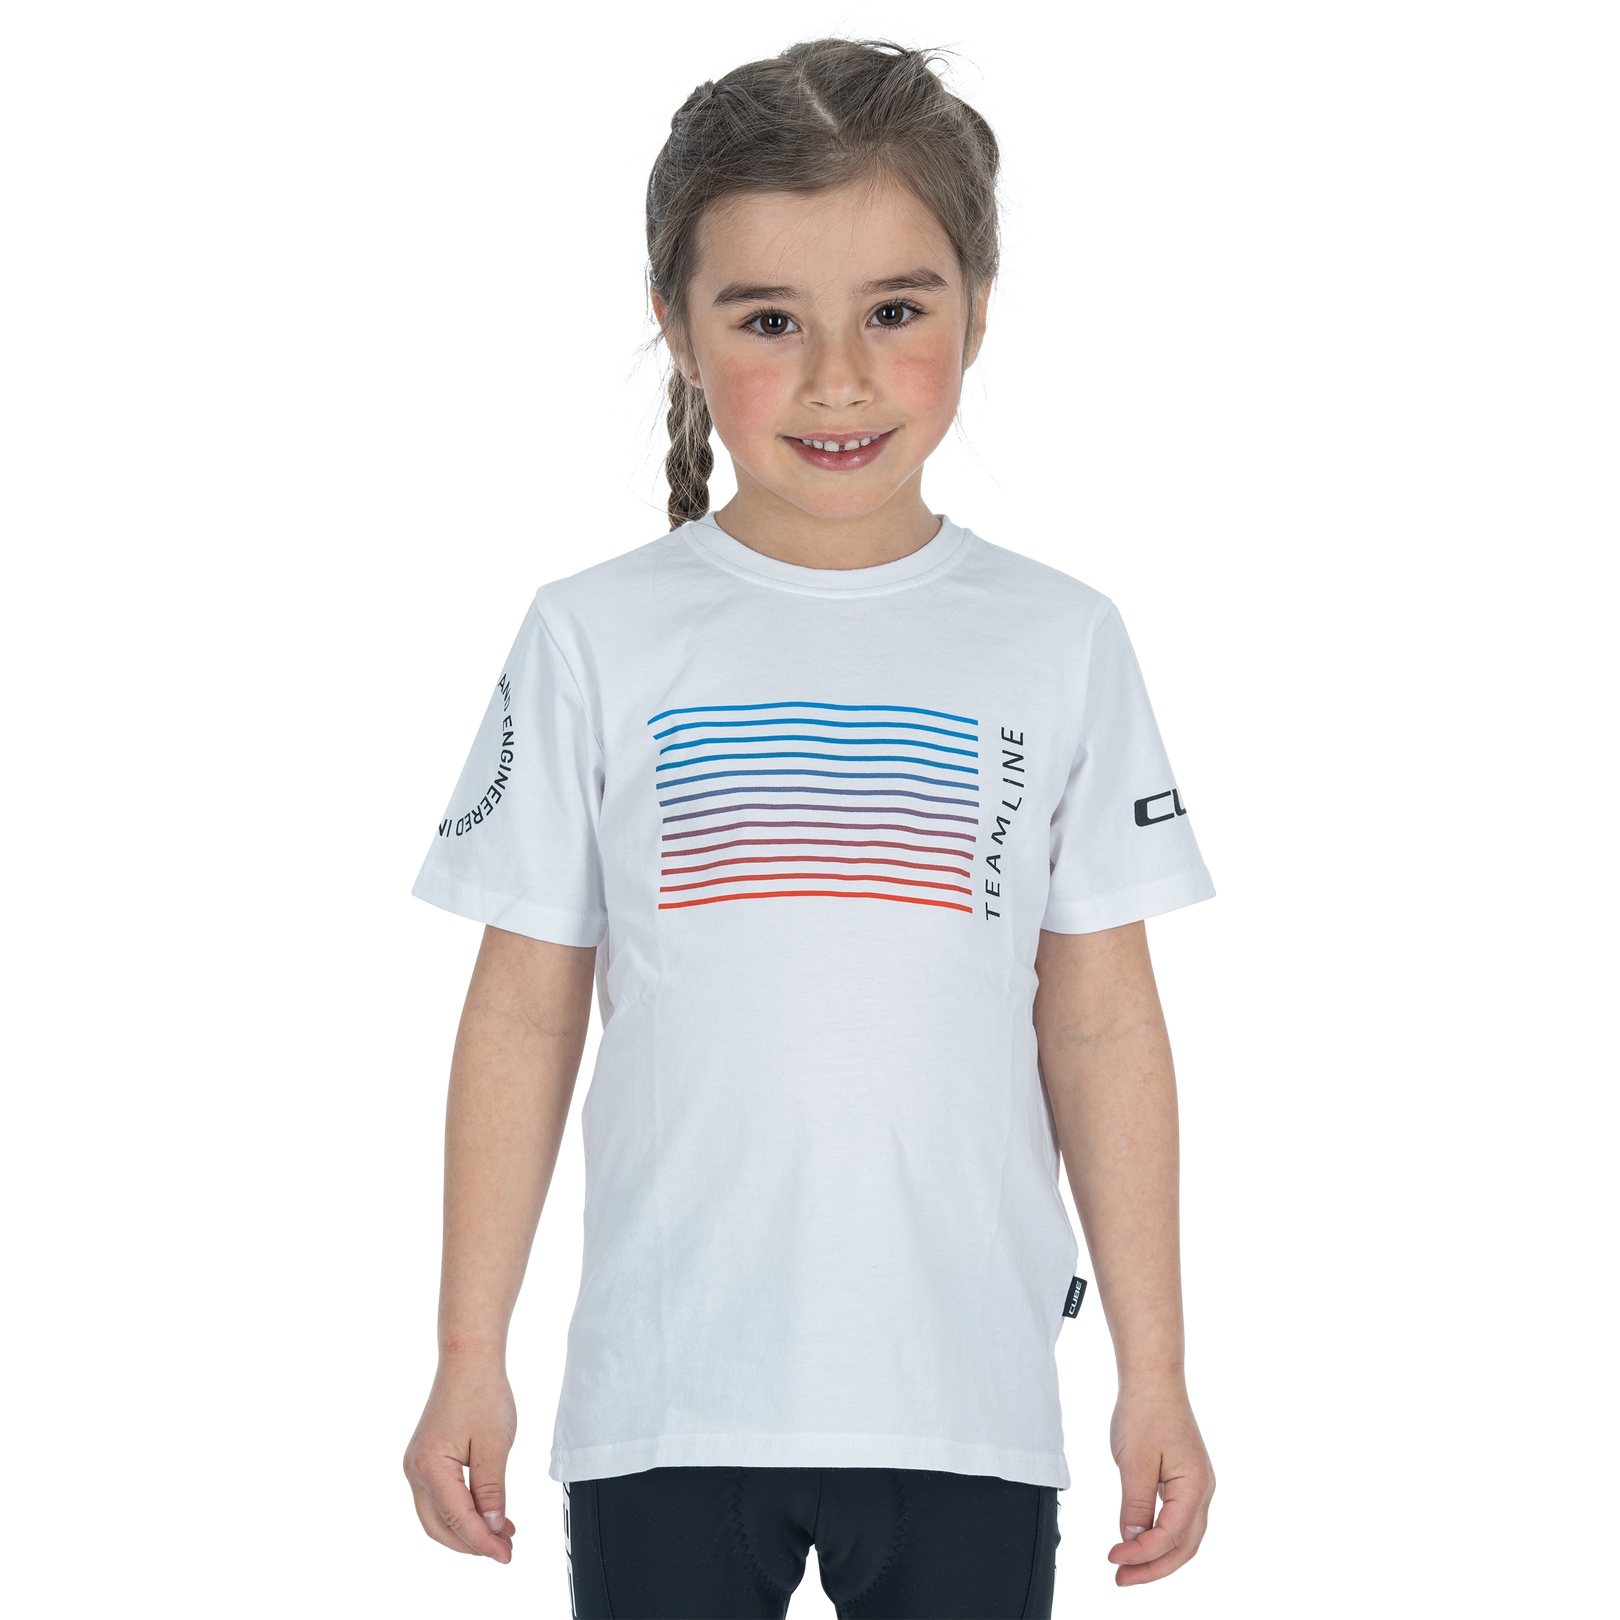 Produktbild von CUBE Organic Teamline T-Shirt Kinder - weiß